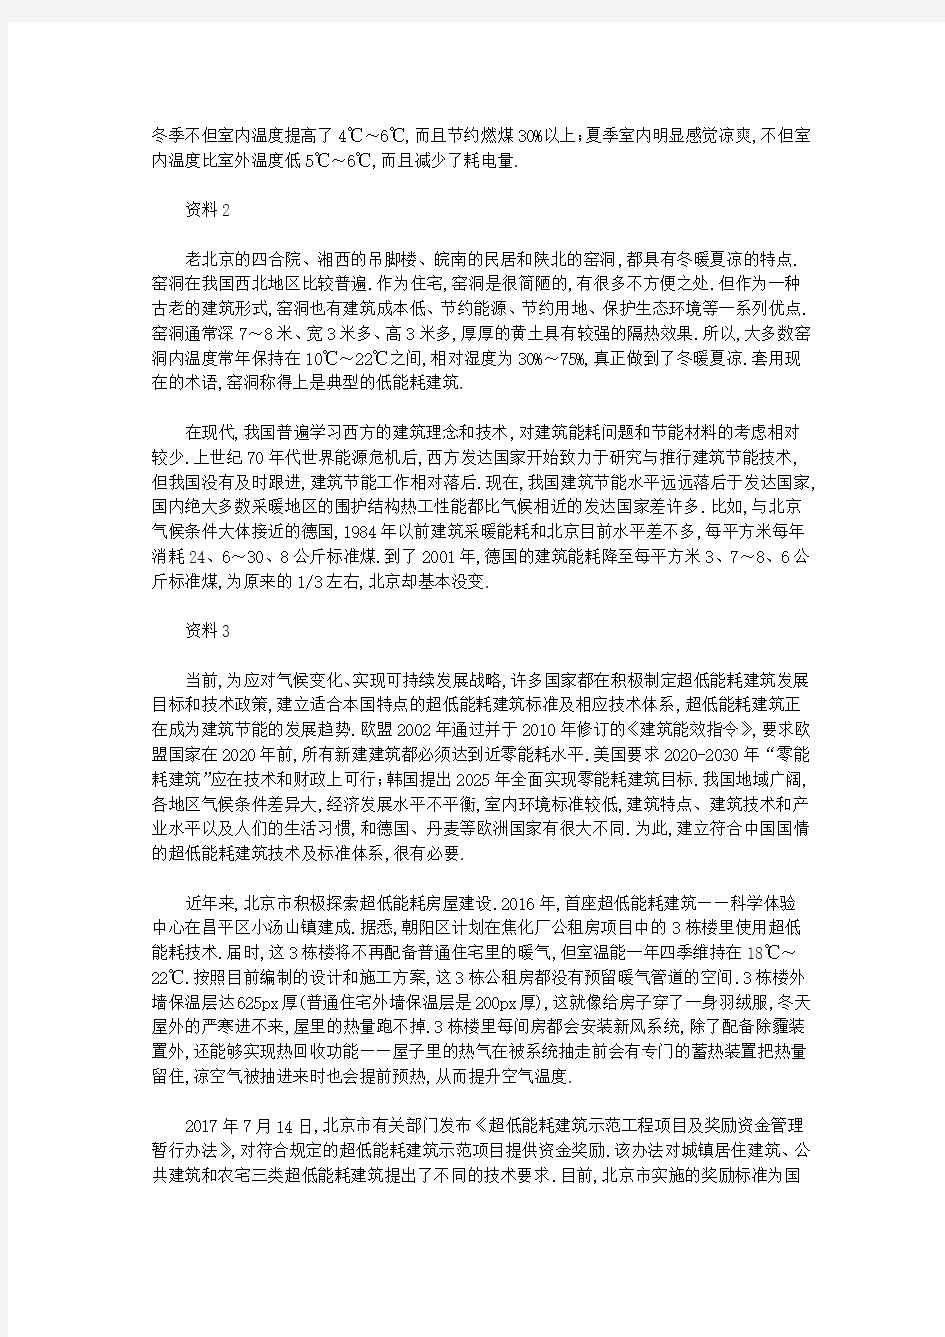 2018年北京公务员考试申论真题与参考答案